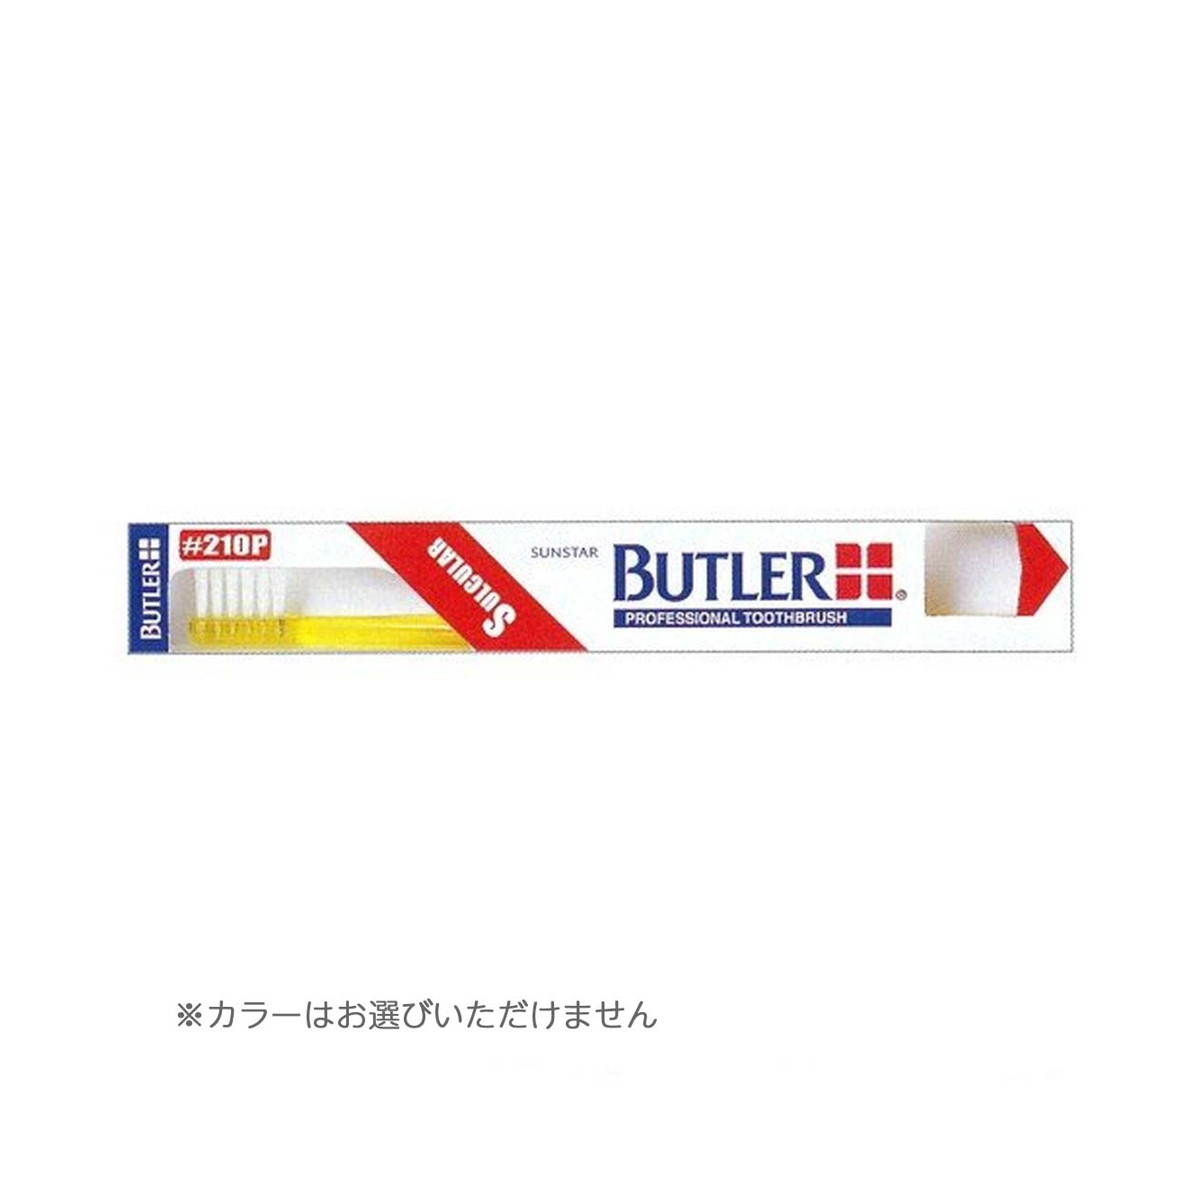 【送料込・まとめ買い×12個セット】サンスター BUTLER バトラー 歯ブラシ #210P 歯肉溝用 ※色は選べません